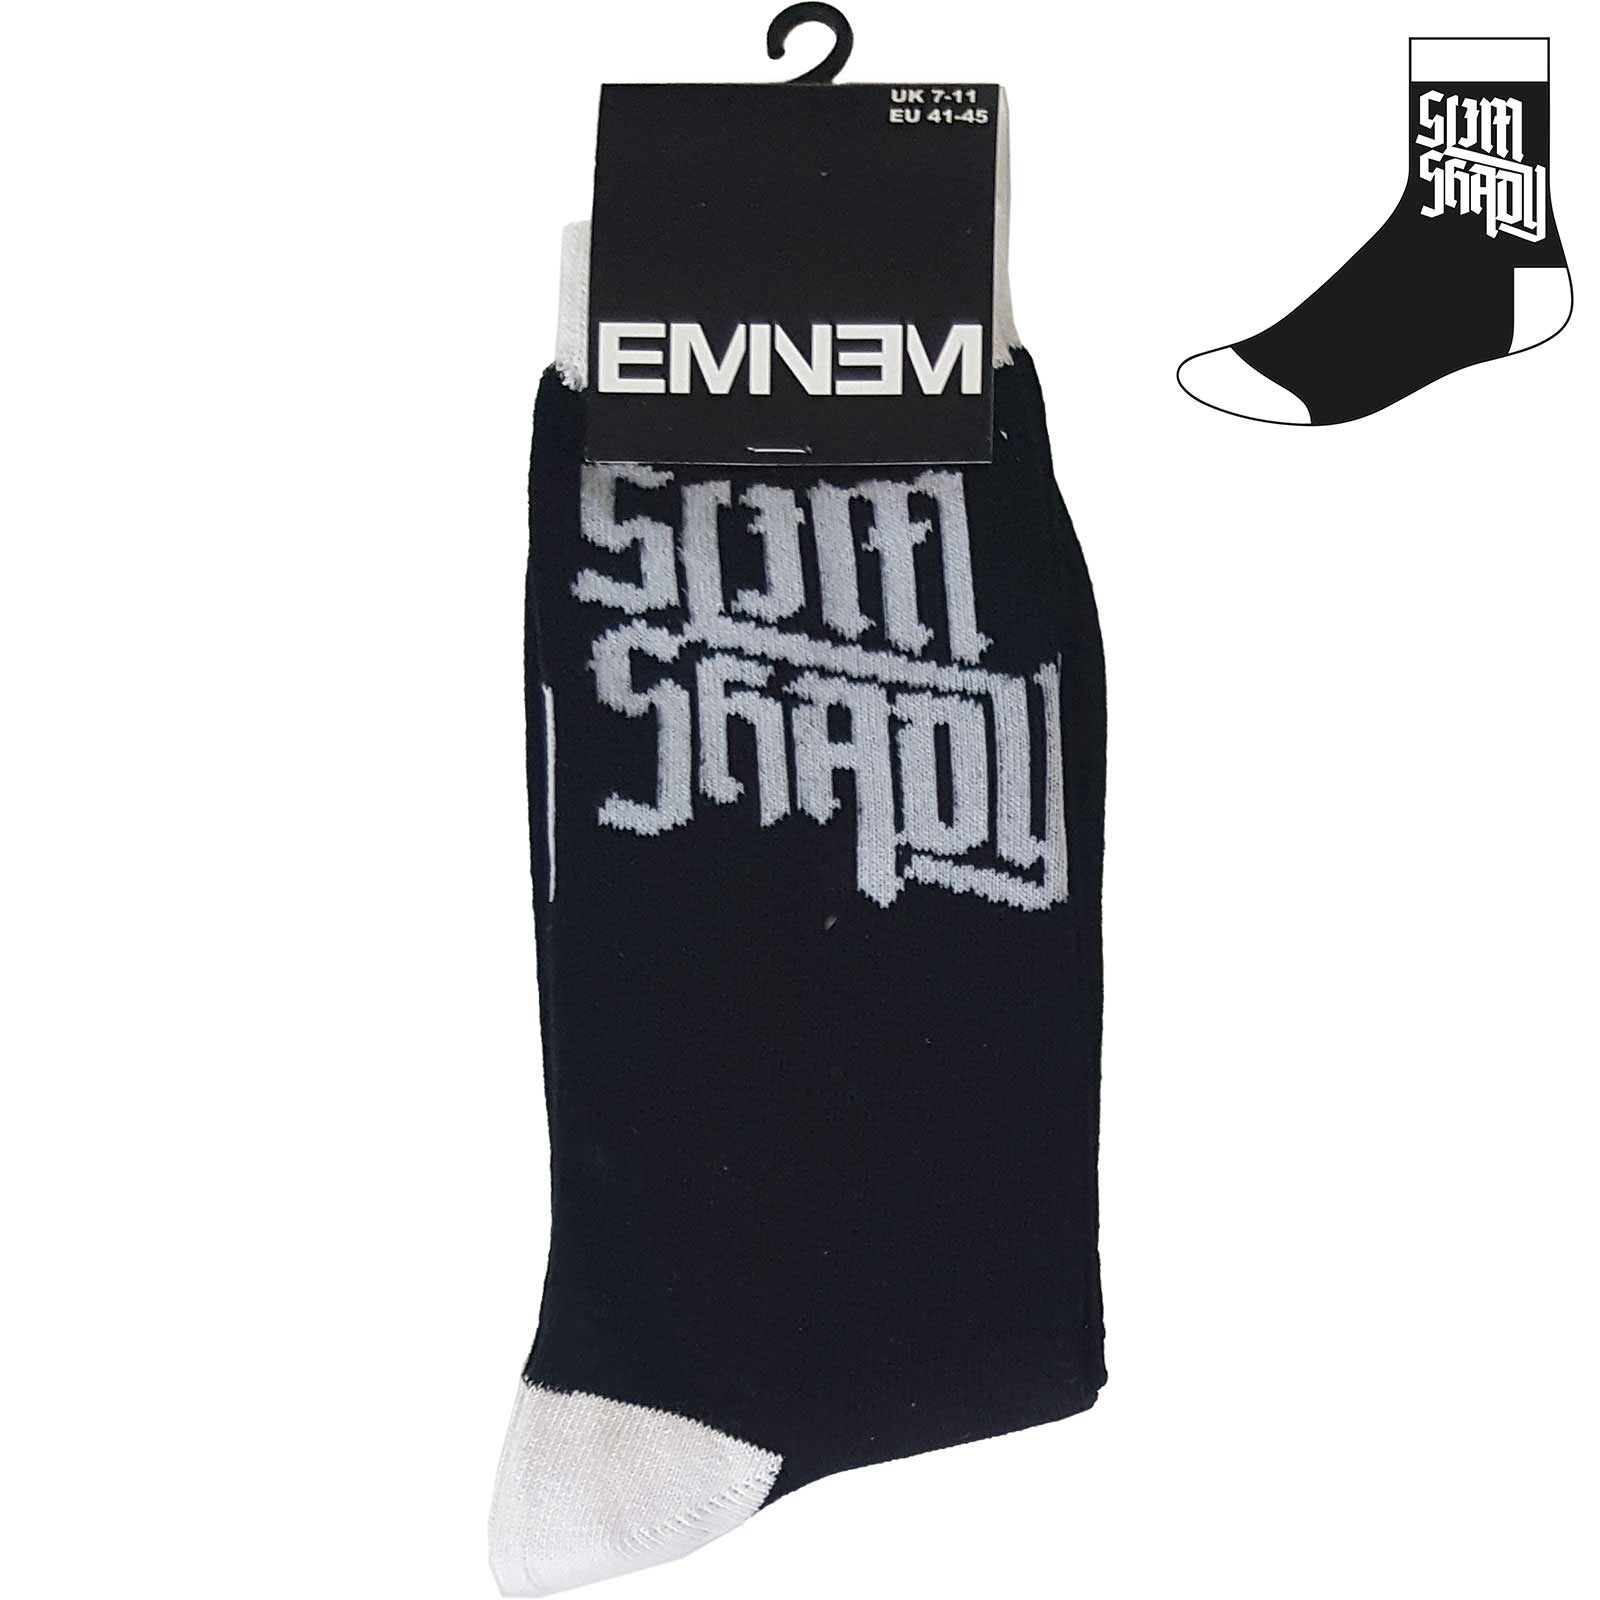 Eminem Unisex Ankle Socks - Slim Shady (UK Size 7-11)